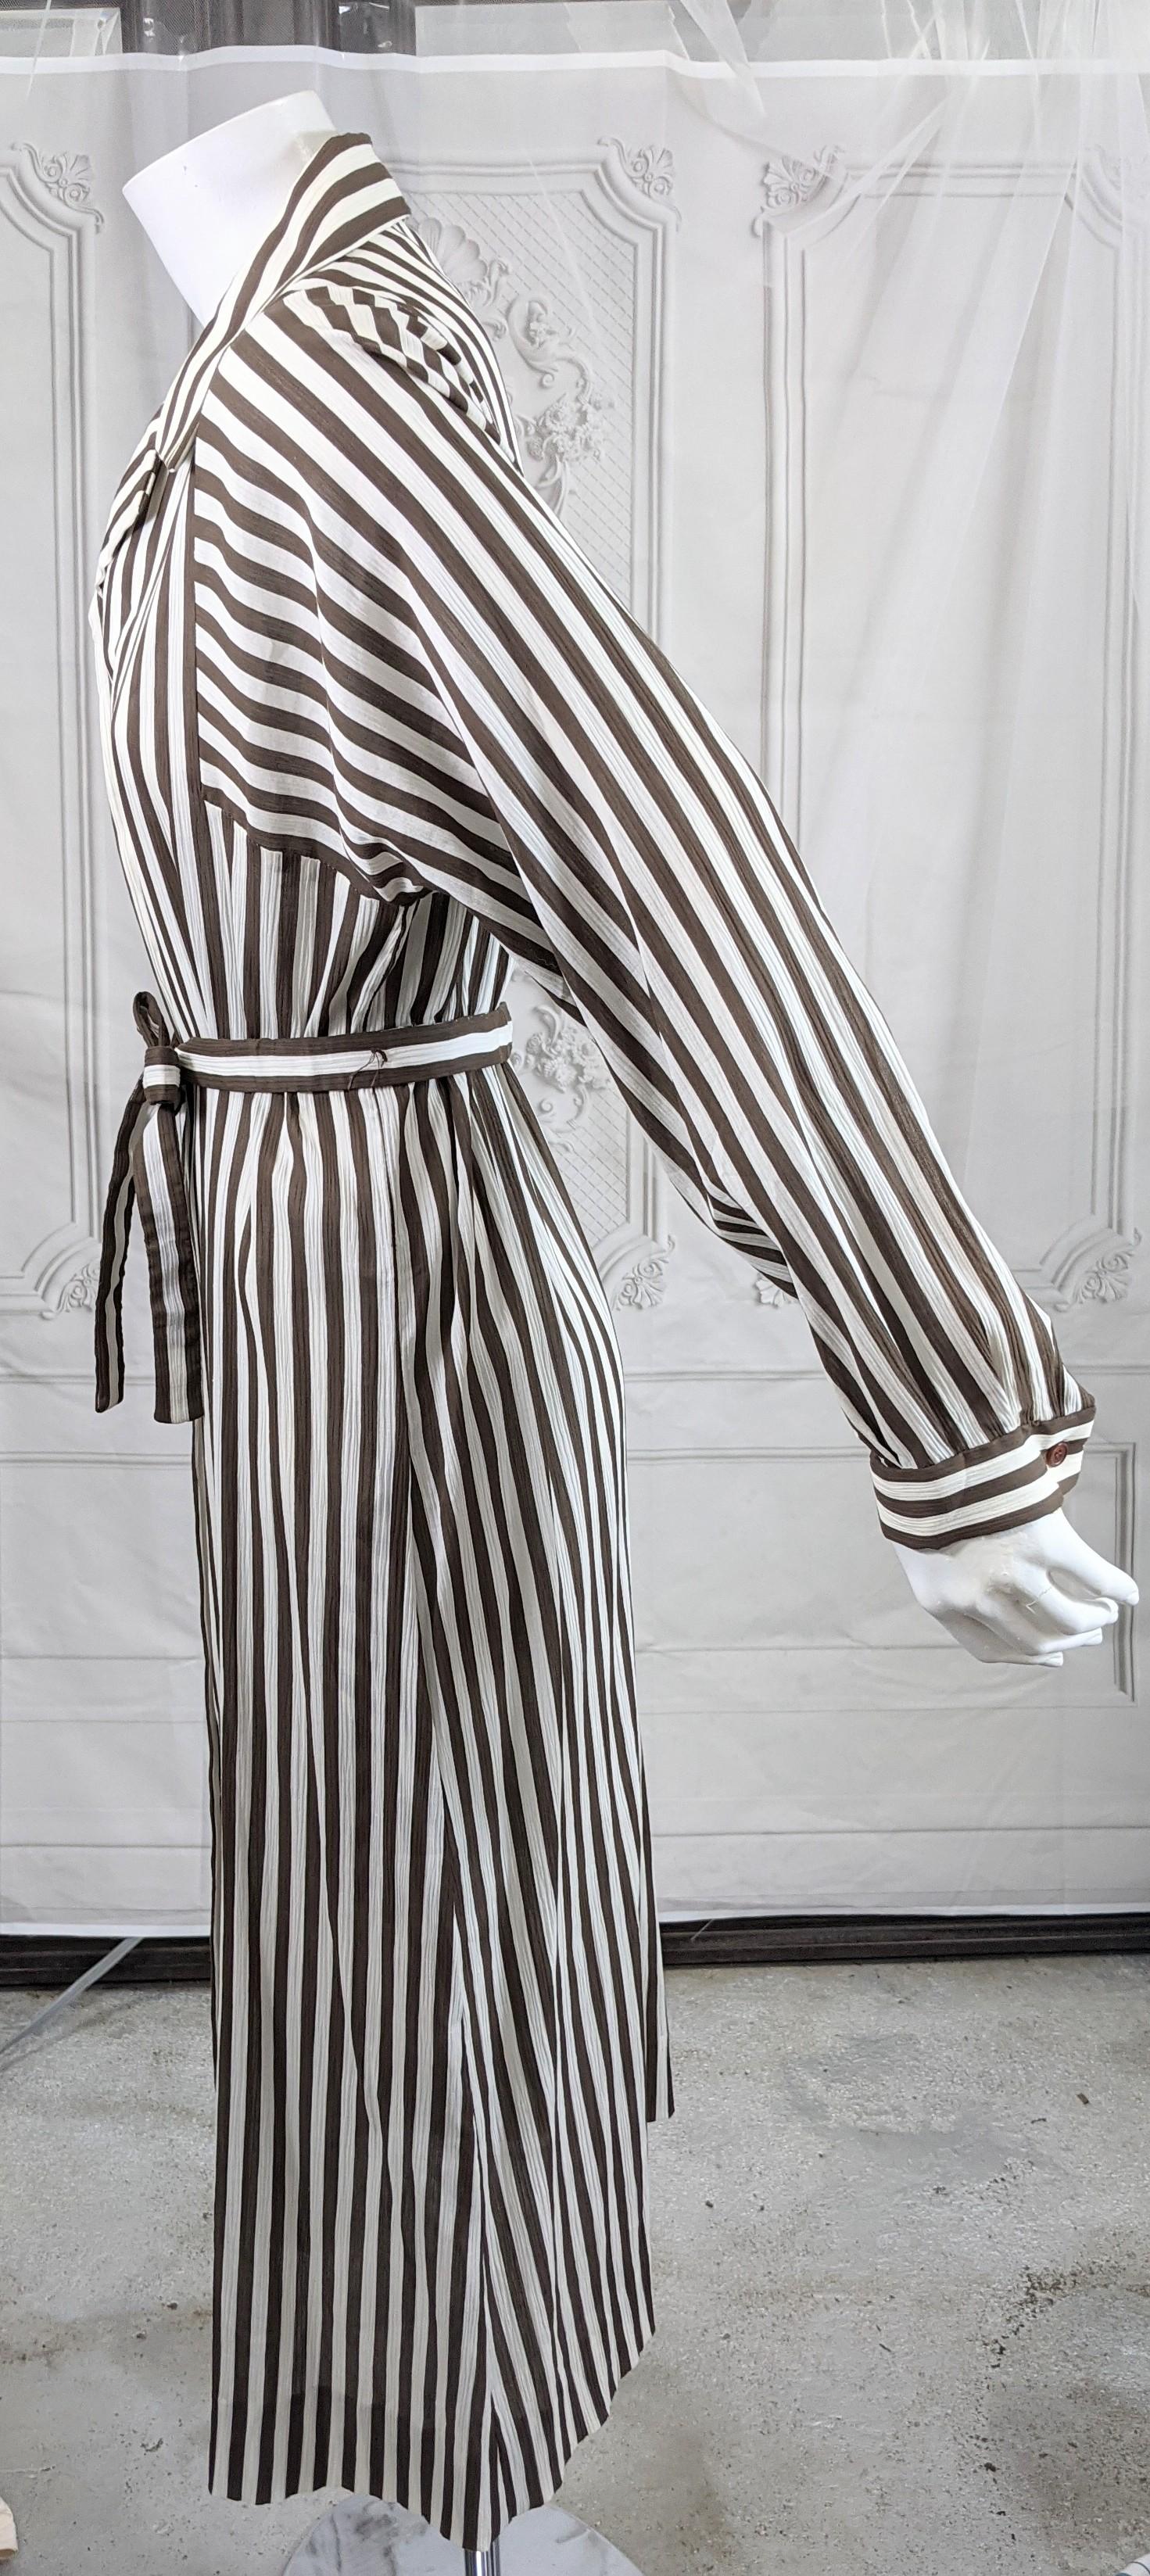 Elegantes und zeitloses Halston Crinkle Chocolate Cotton Striped Day Dress im Shirtwaist-Stil mit eigenem Gürtel. Tiefe Dolman-Ärmel haben längs verlaufende Streifen.
Altbestand mit zusätzlichen Knöpfen. Leichte Baumwolle, mit gefärbten